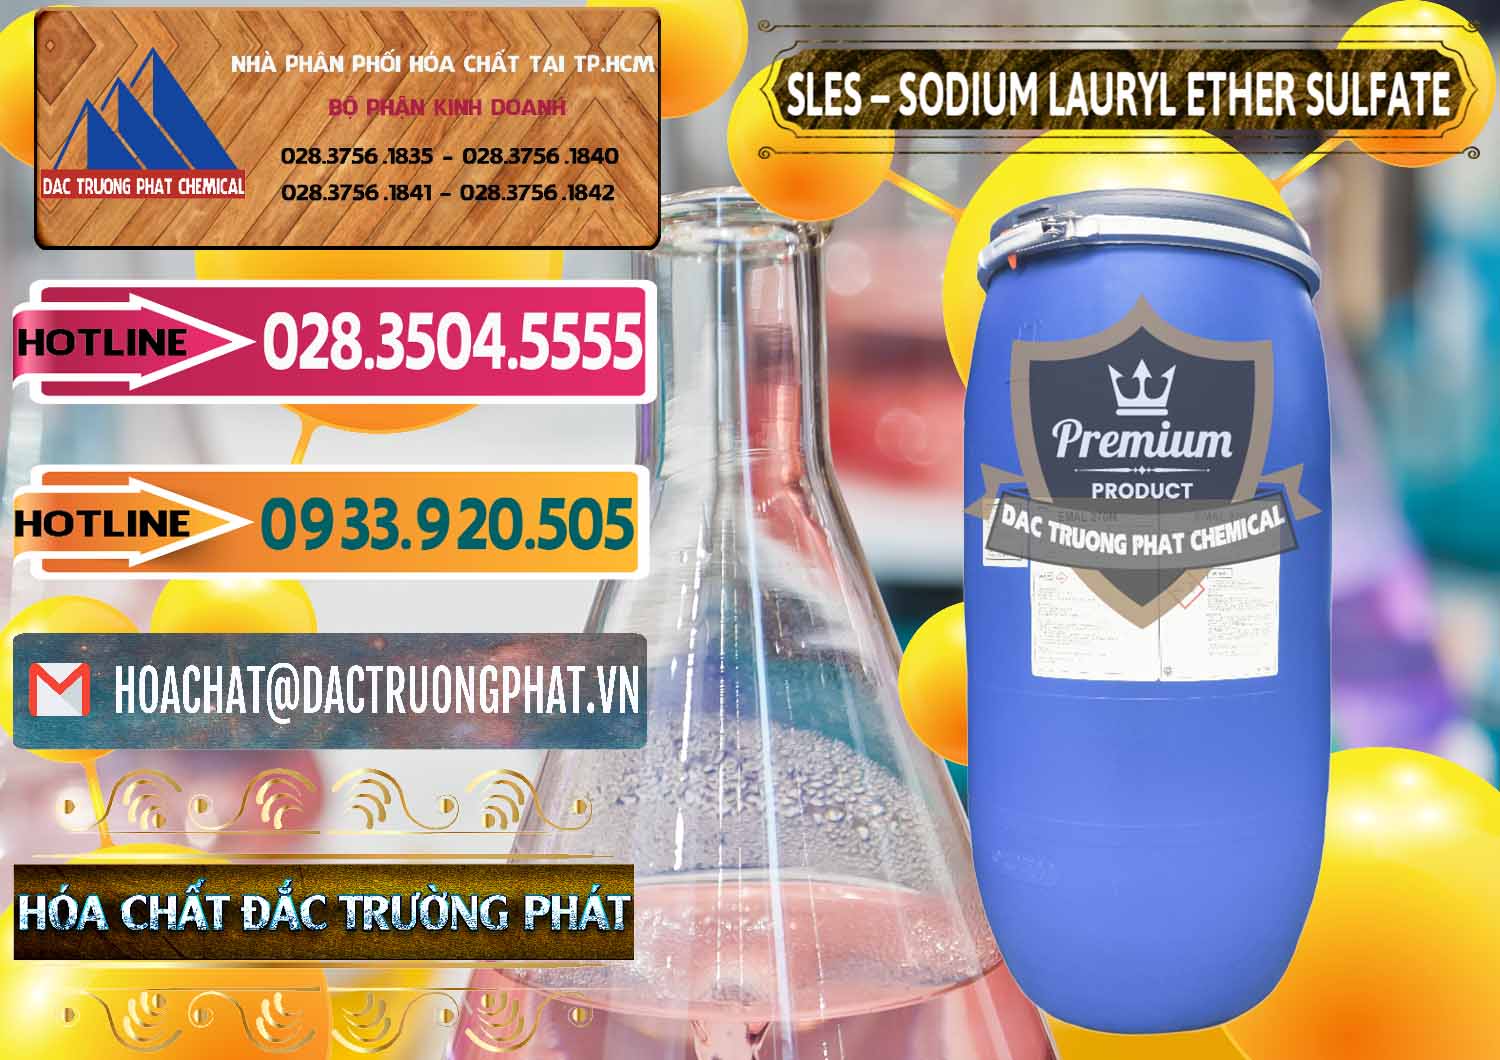 Cty phân phối - bán Chất Tạo Bọt Sles - Sodium Lauryl Ether Sulphate Kao Indonesia - 0046 - Đơn vị chuyên phân phối _ bán hóa chất tại TP.HCM - dactruongphat.vn